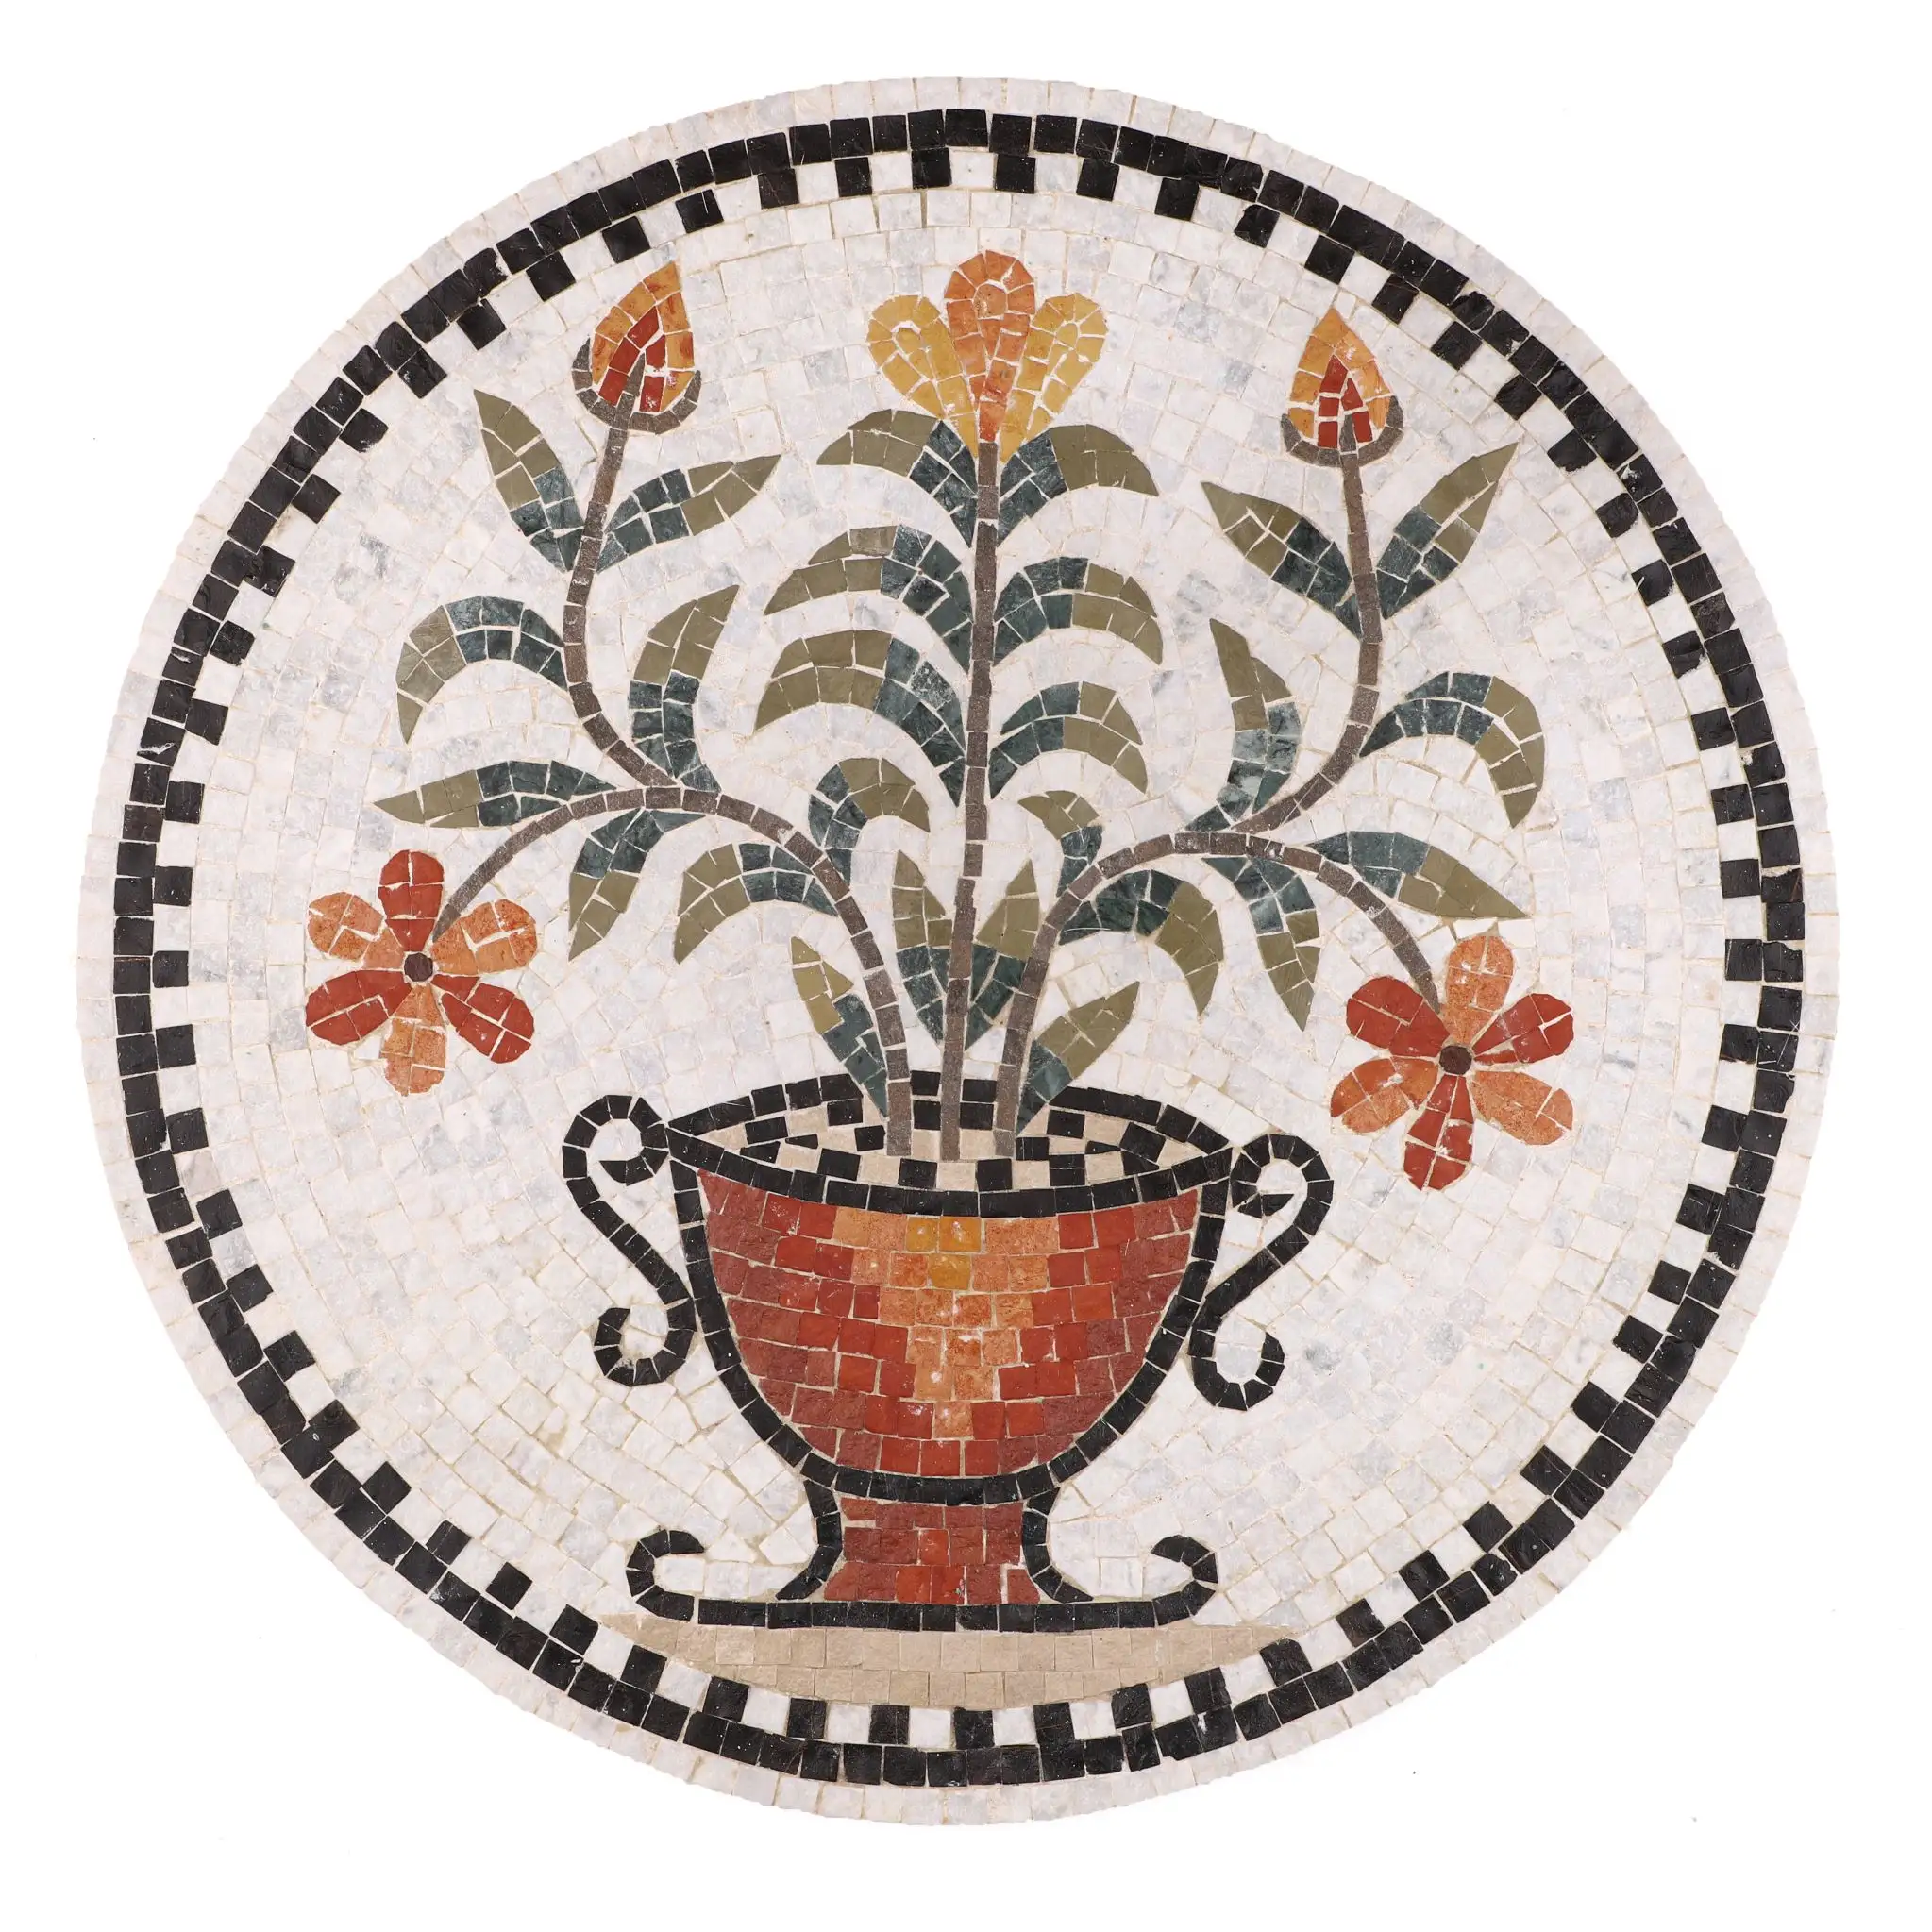 Sıcak satış renkli duvar mozaik fayans yapılan dekorasyon için doğal taşlar ve satılık mermer mozaik